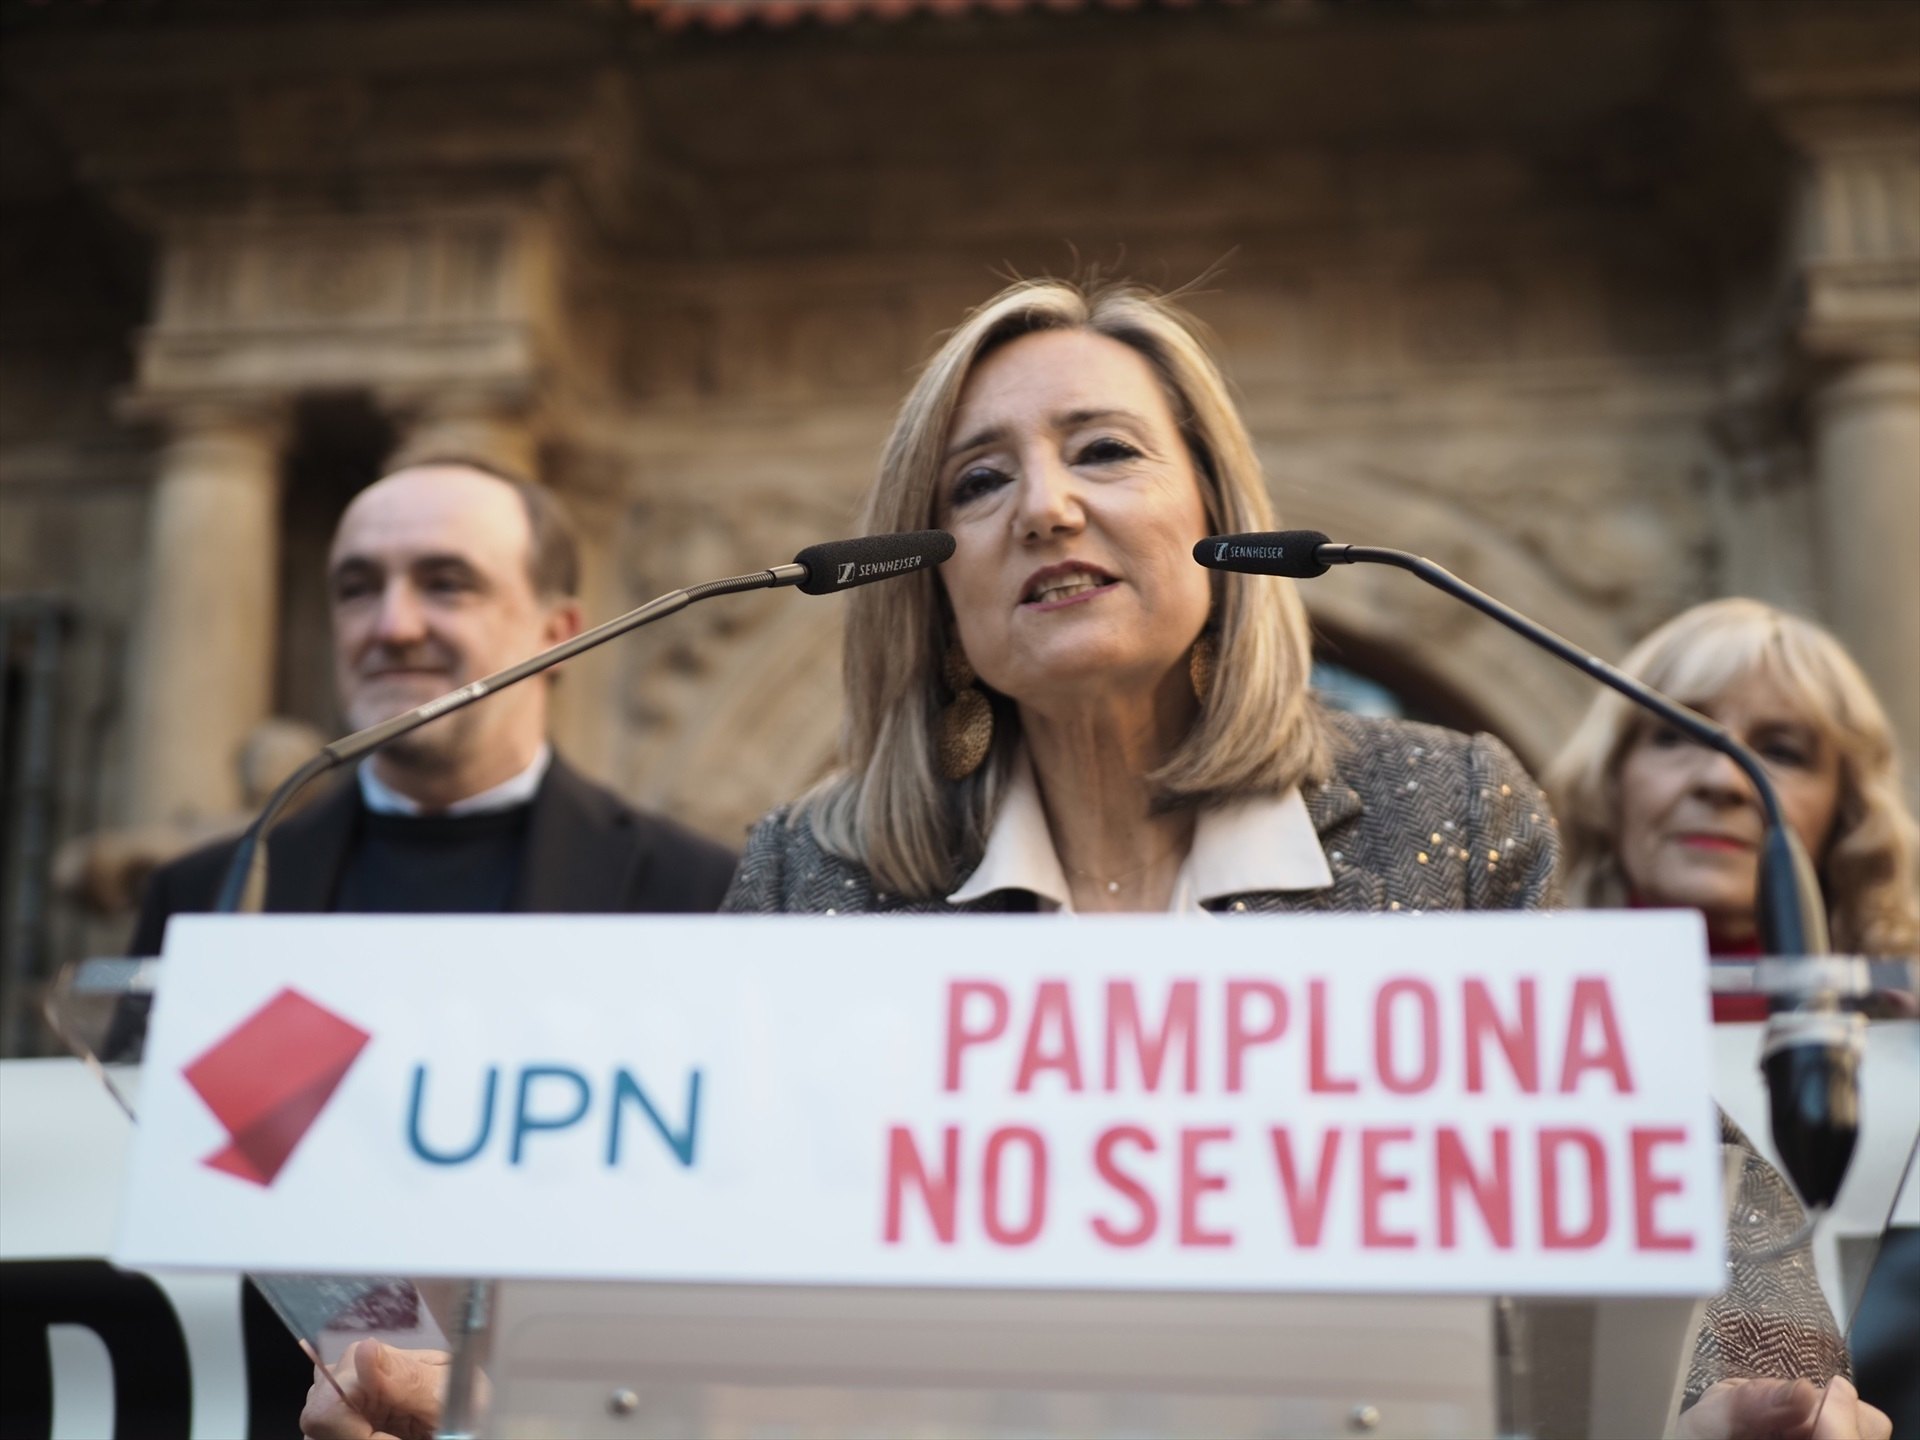 L'alcaldessa de Pamplona dona la raó a Junts: "Ara entenc per què cal un mediador"